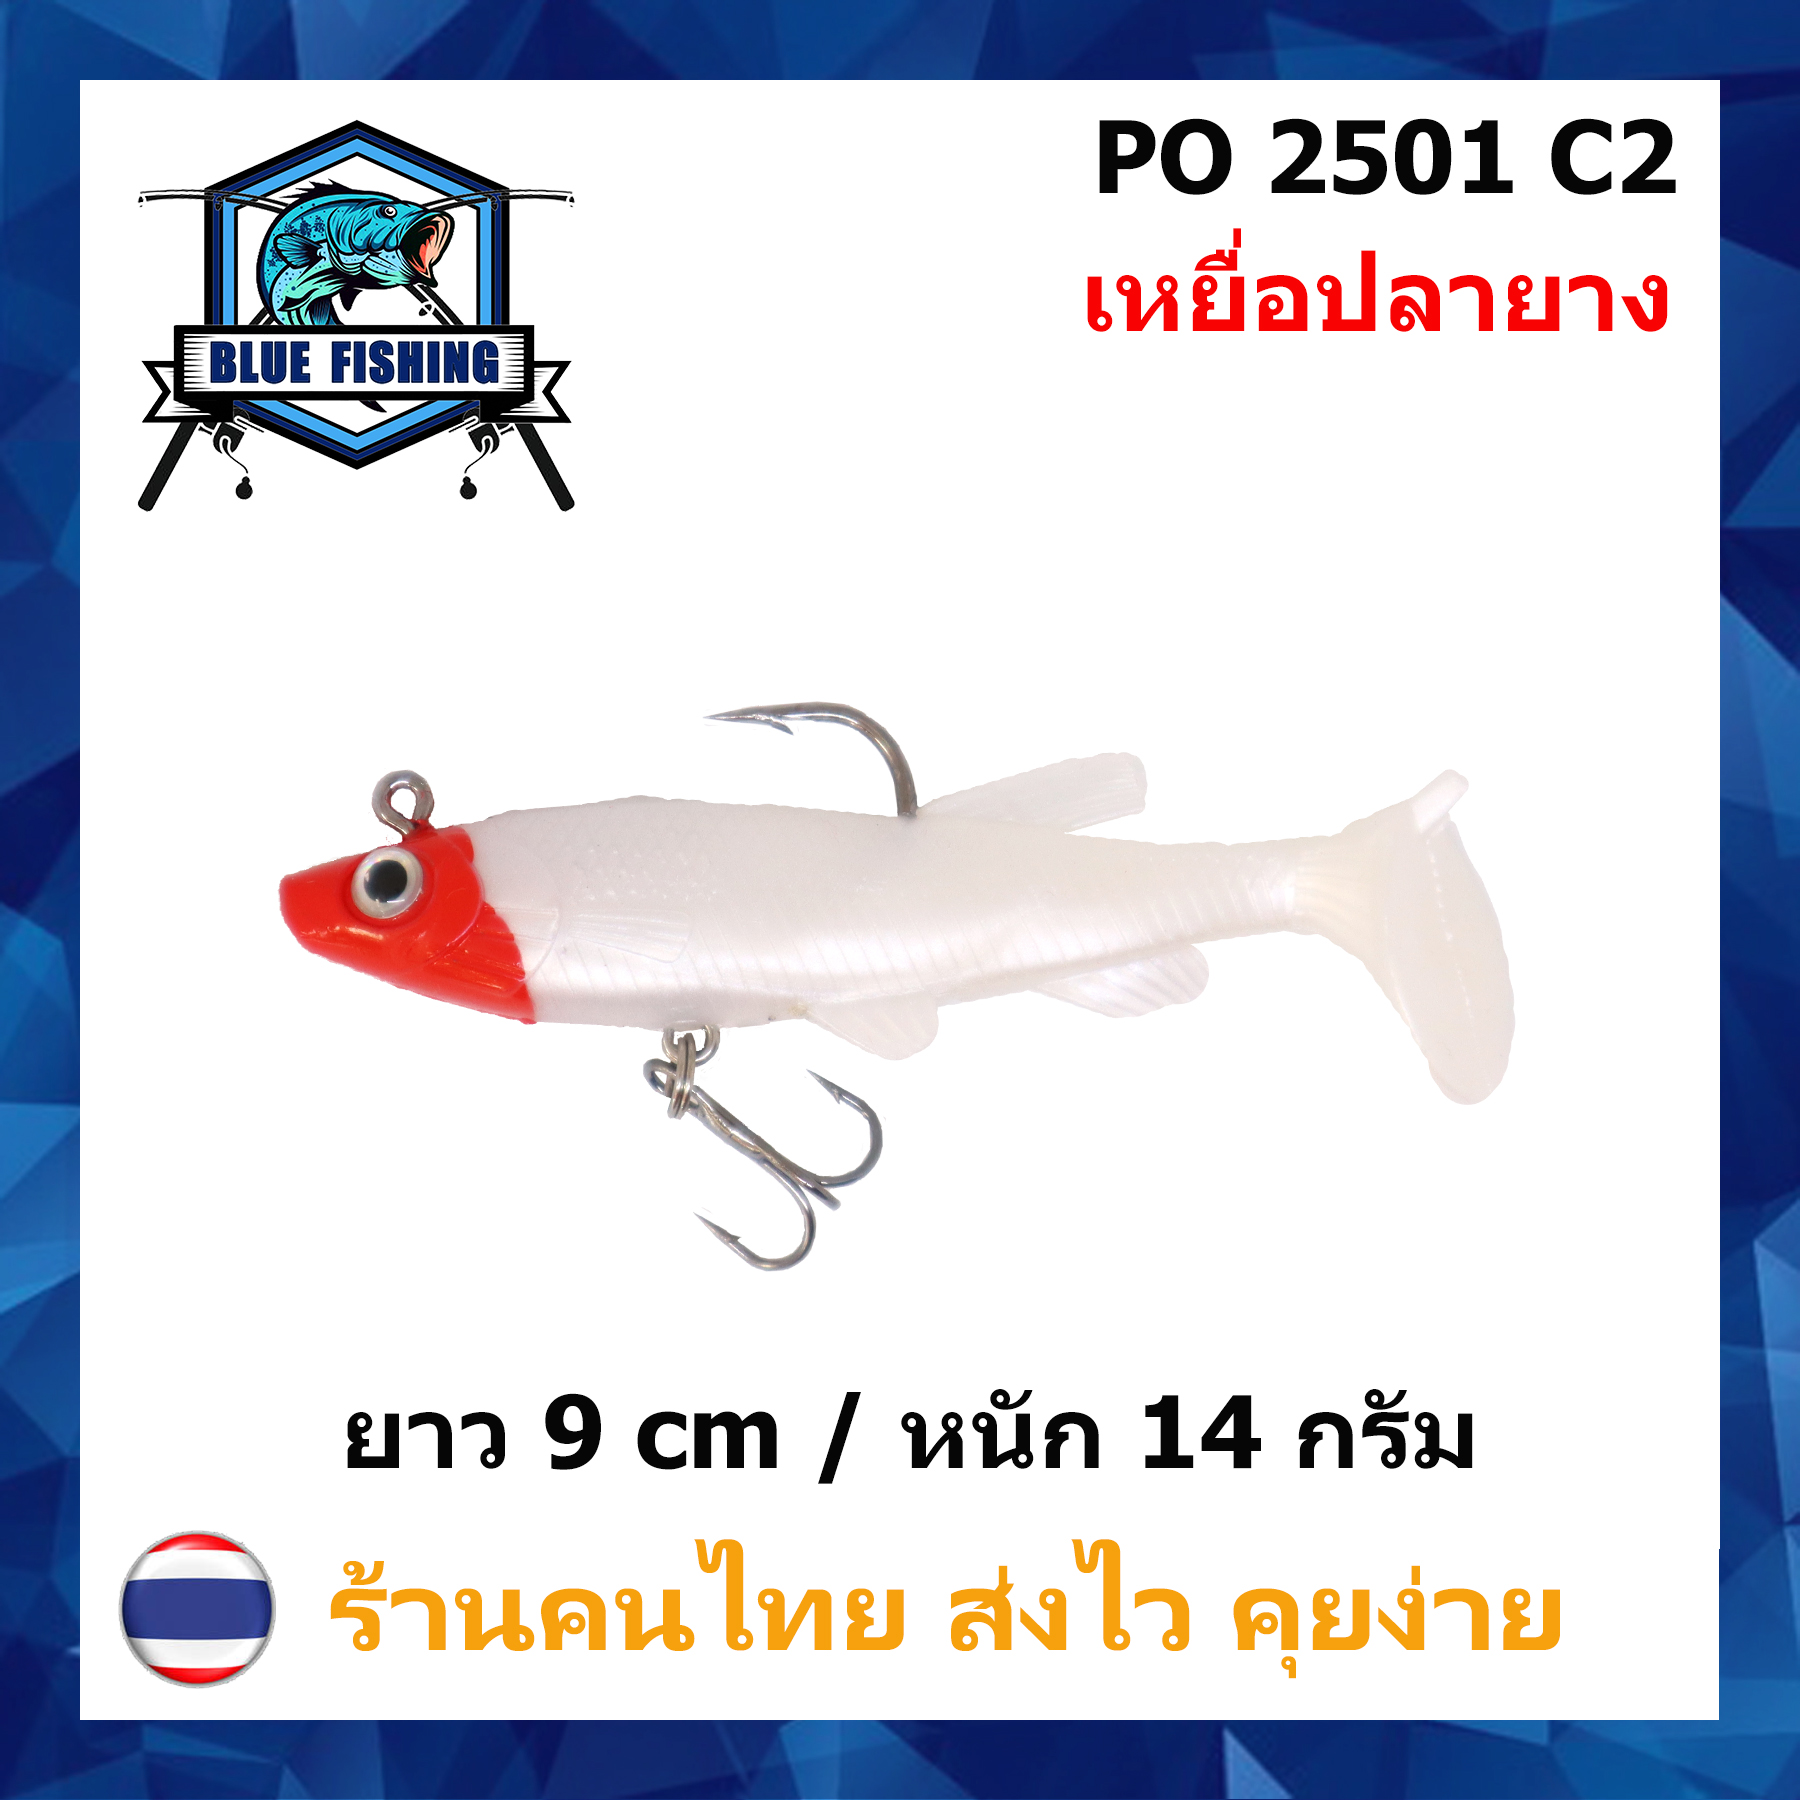 บลู ฟิชชิ่ง [ Blue Fishing ] (มีสินค้าพร้อมส่ง ส่งเร็ว) เหยื่อปลอม เหยื่อตกปลา ปลายาง เนื้อนุ่ม  ยาว 9 CM หนัก 14 กรัม พร้อมตาเบ็ด PO 2501